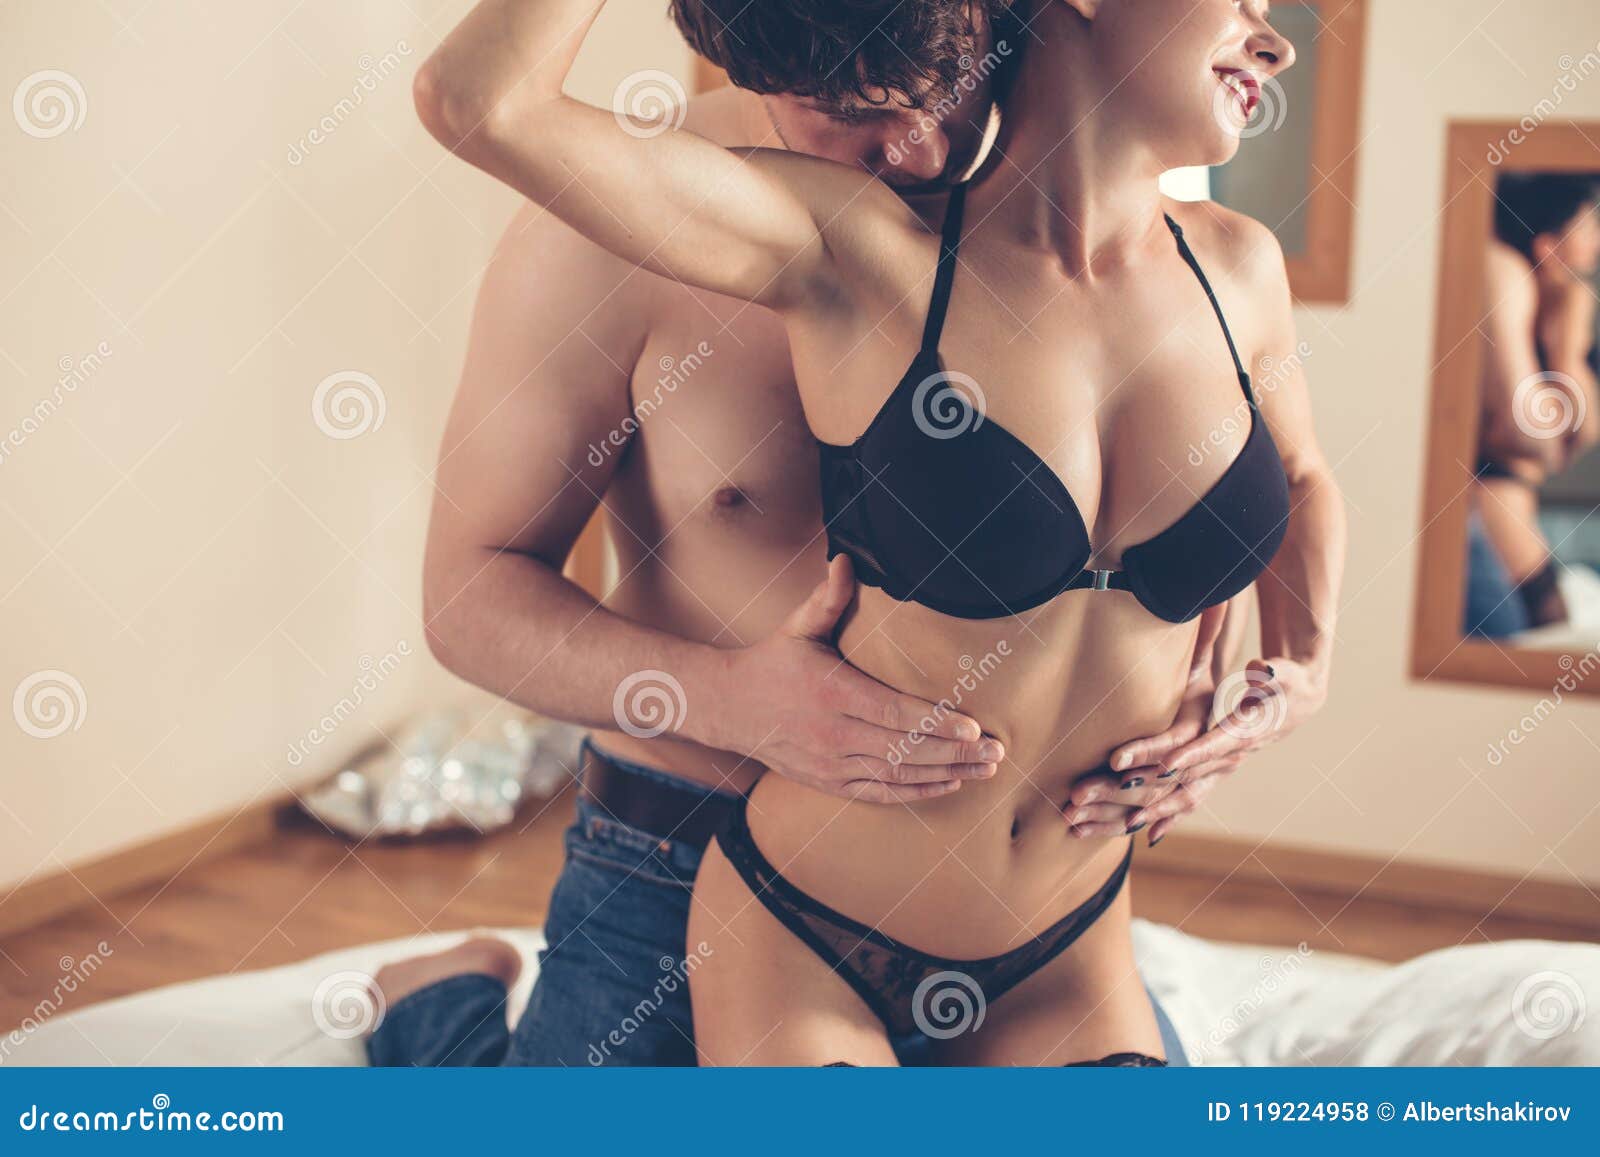 Best of Hot sex with men